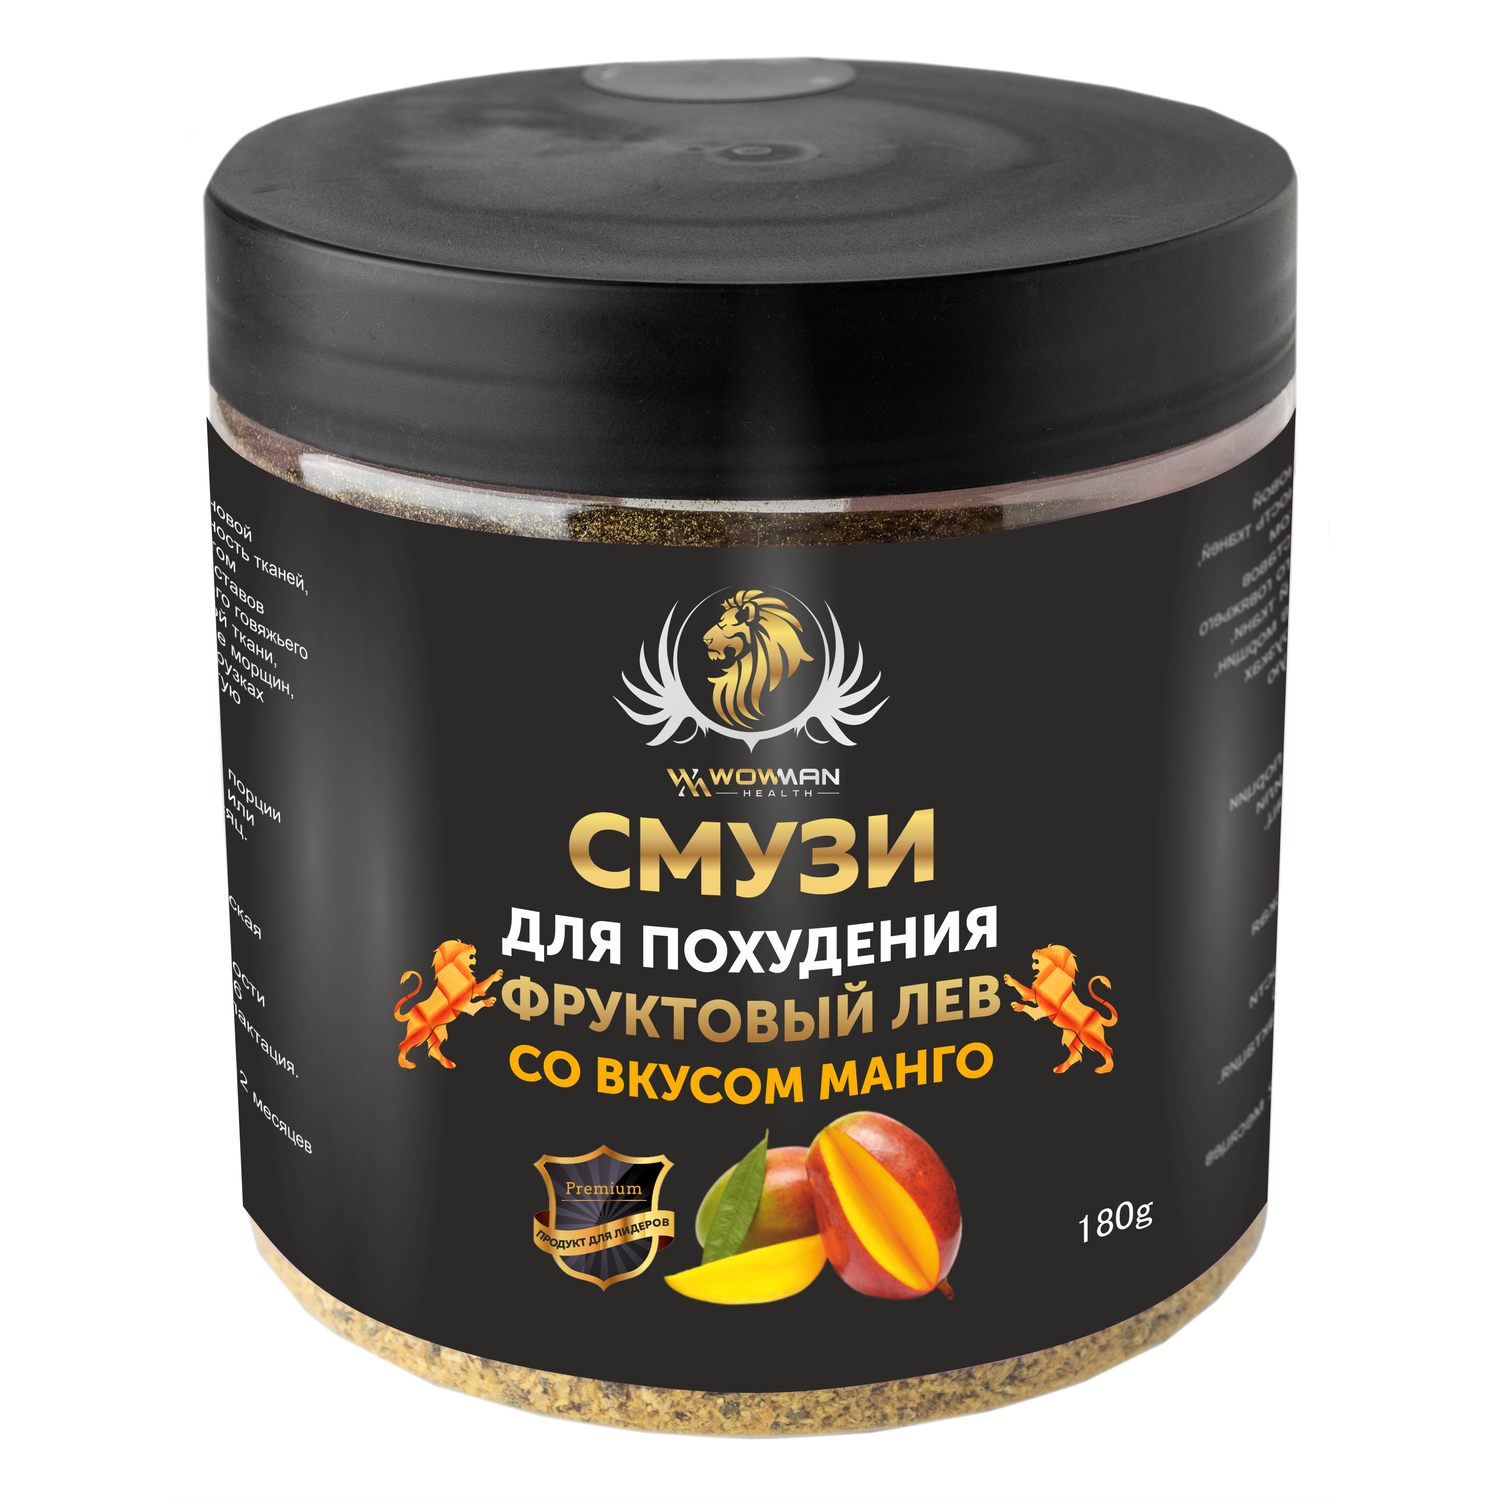 Подарочный набор Crazy Box WowMan Протеин со вкусом ваниль Смузи для похудения со вкусом манго - фото 3